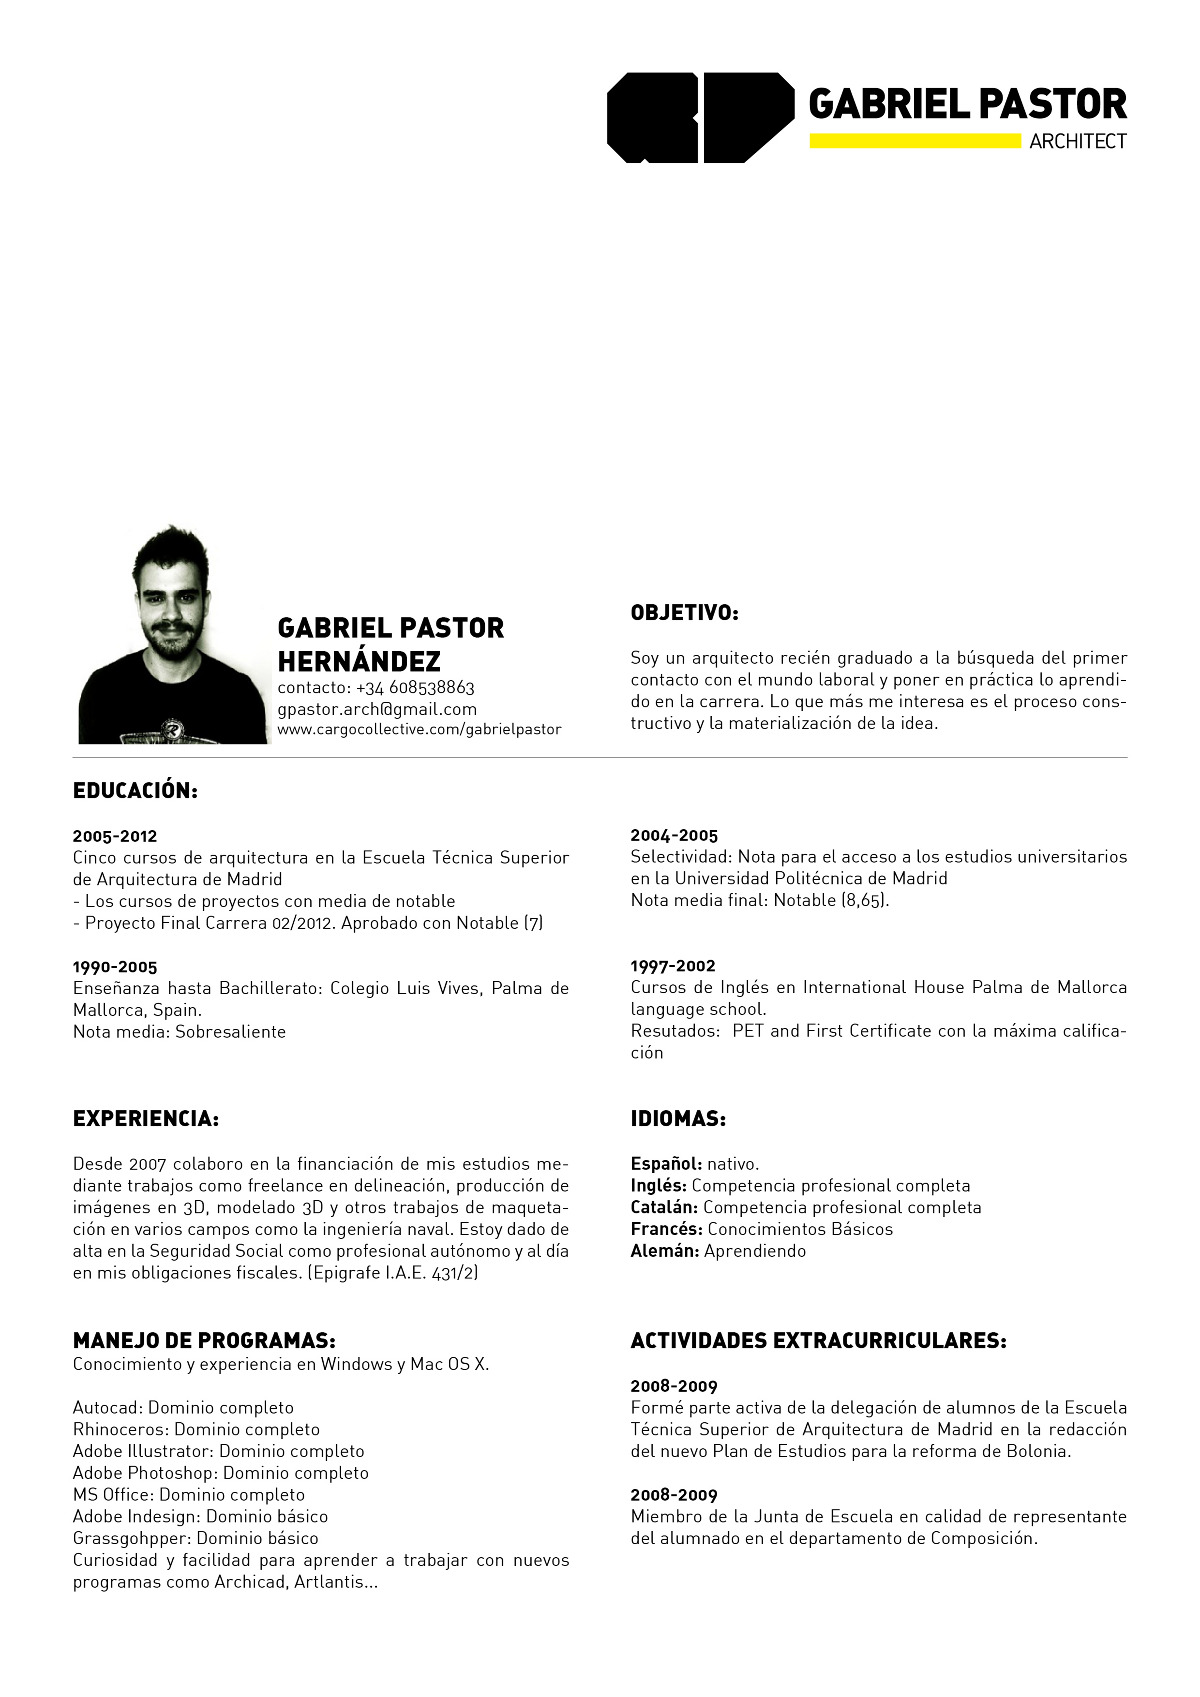 Curriculum Vitae em PDF Gabriel Pastor 